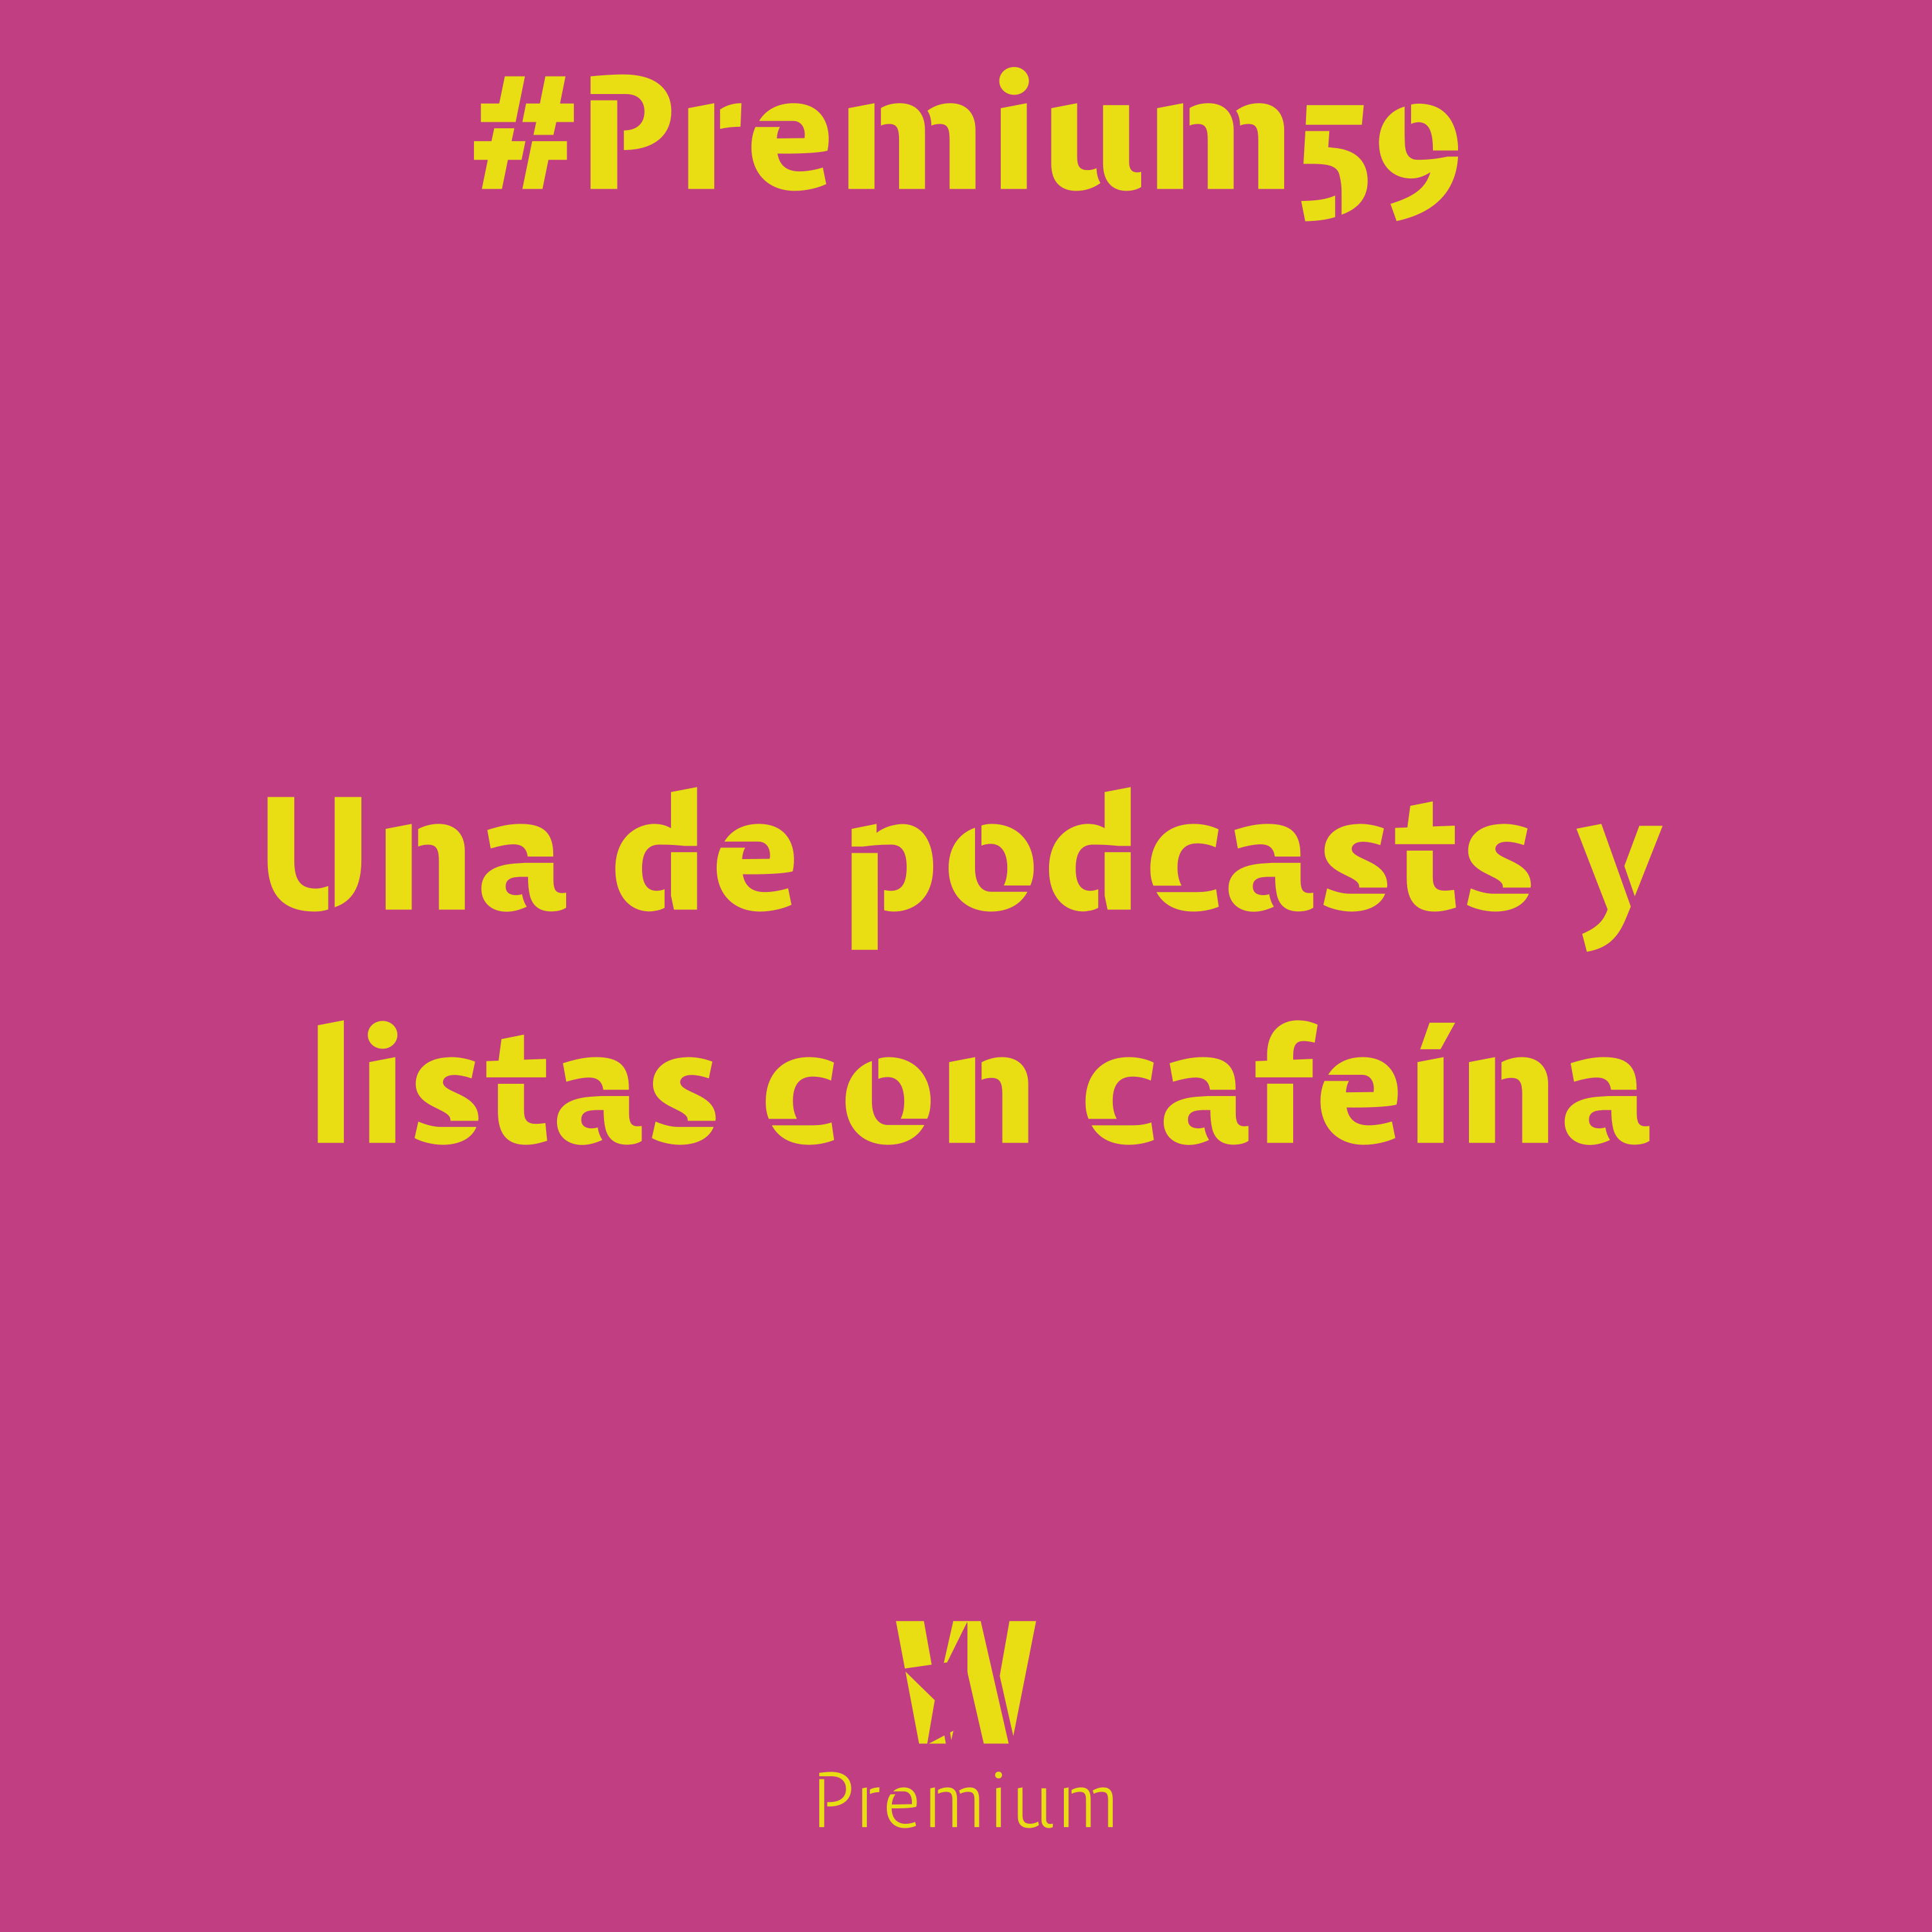 #Premium59 - Una de podcasts y listas con cafeína